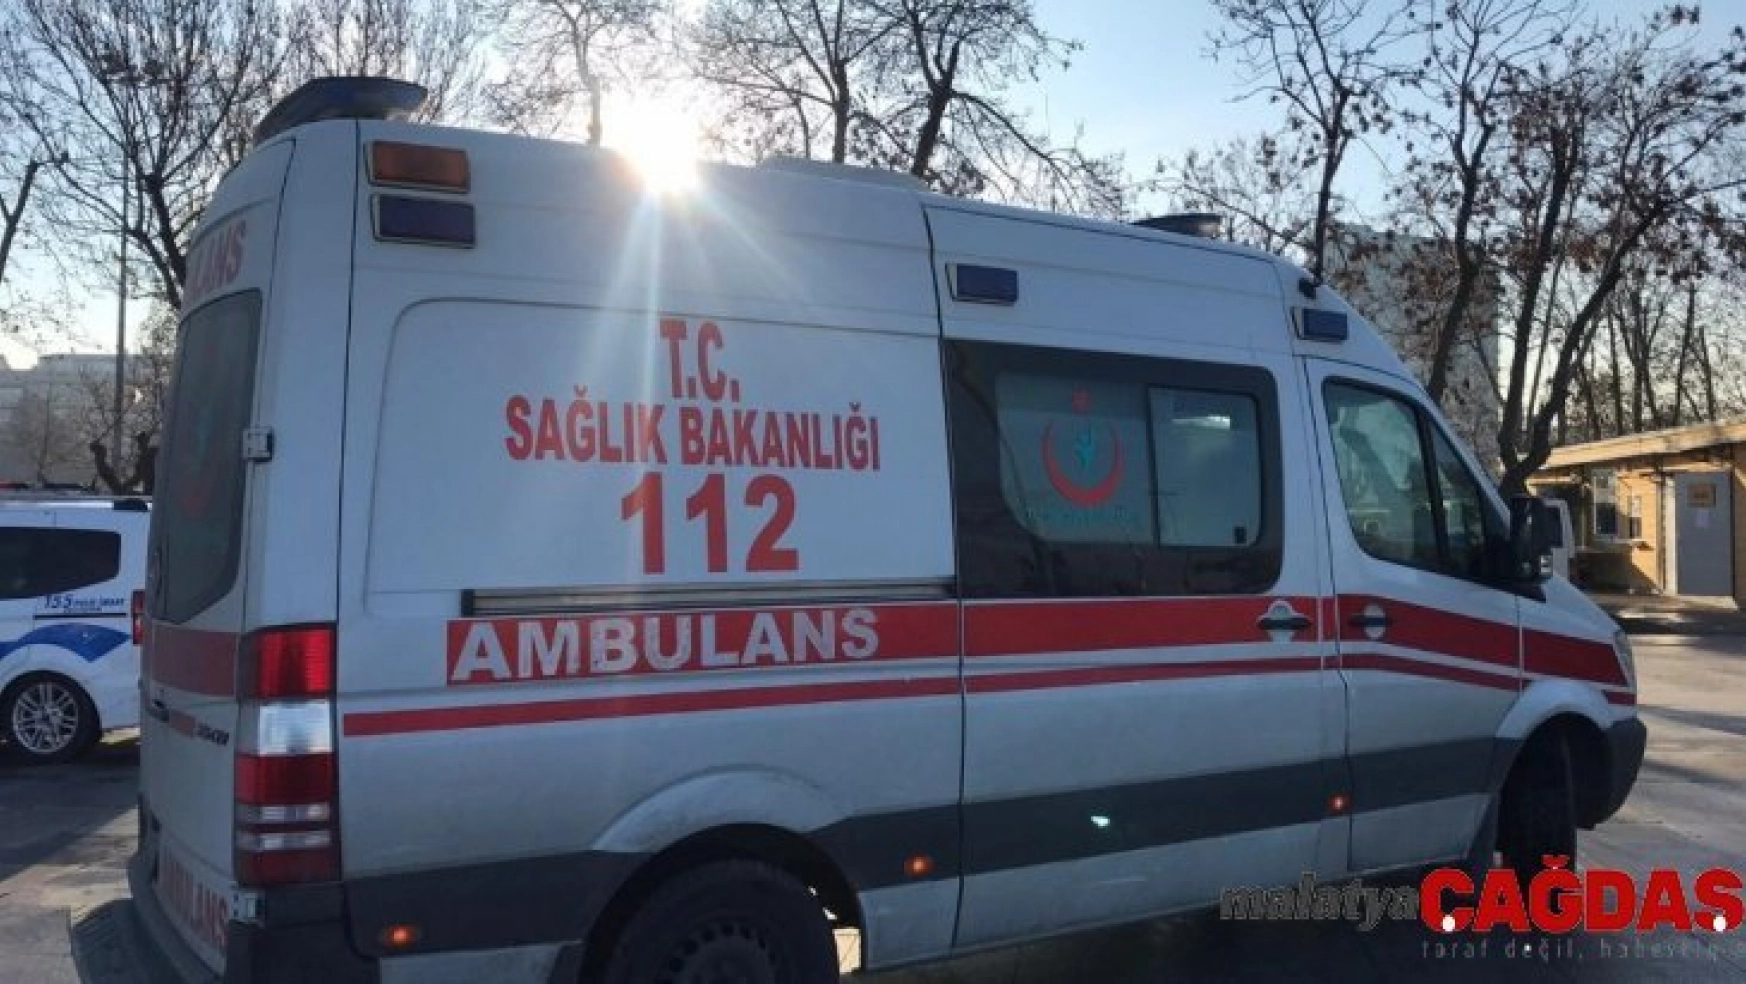 Kadıköy'de sahilde ceset bulundu